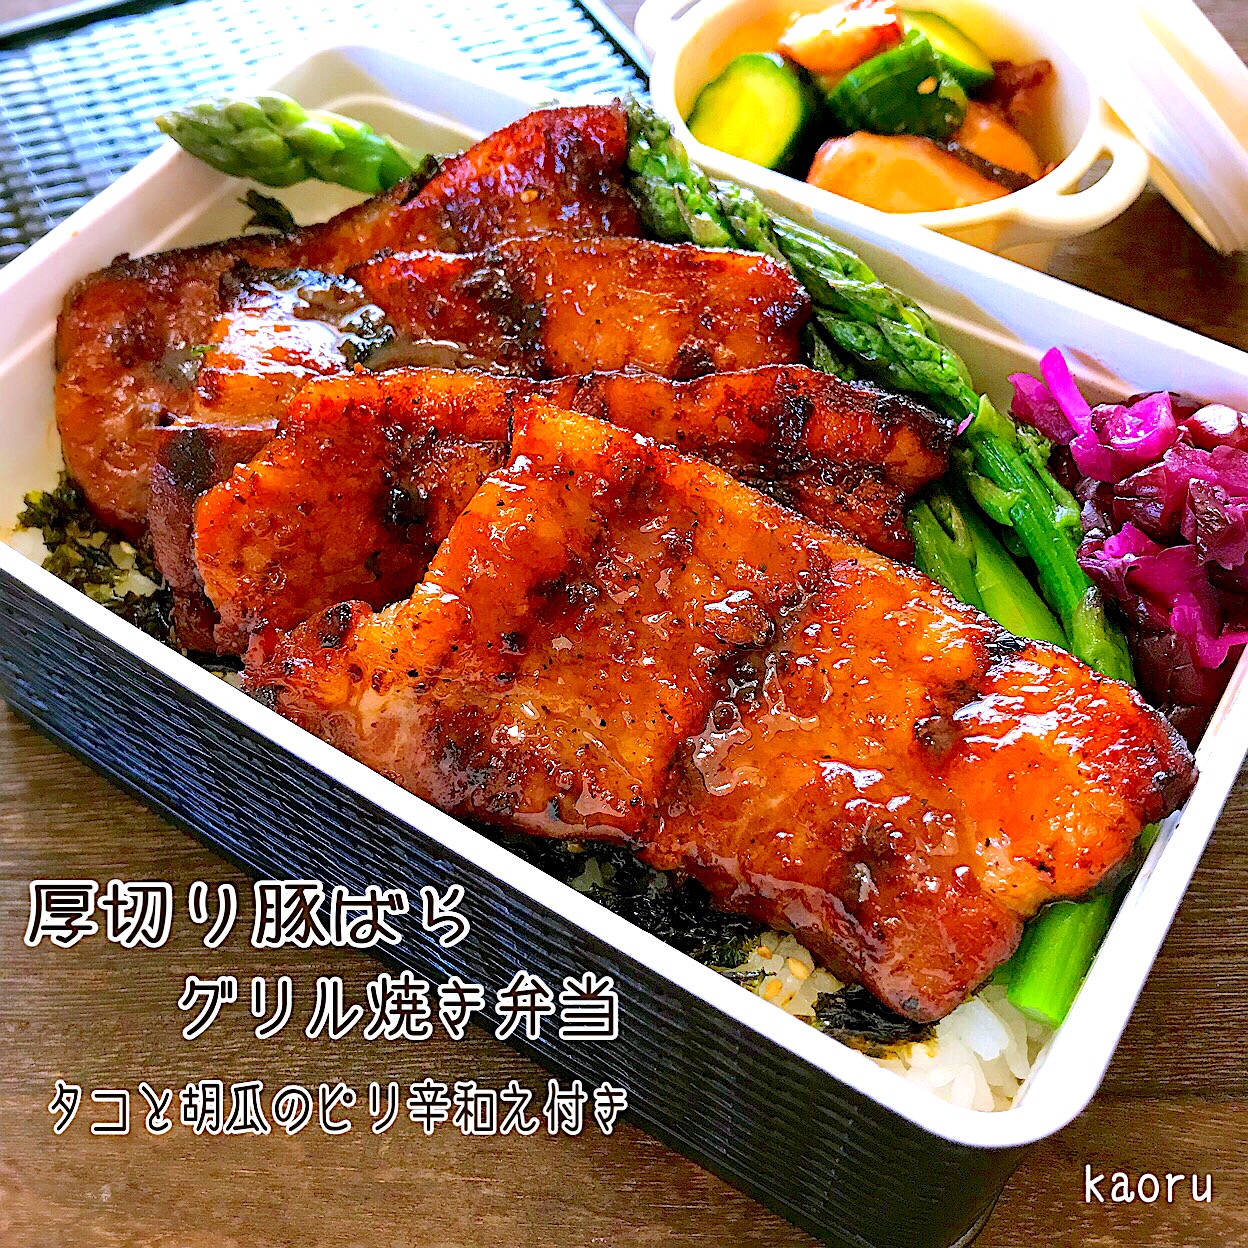 厚切り豚ばらグリル焼き弁当♪で豚丼リレー 三┏( ^o^)┛三┏( ^o^)┛三┏( ^o^)┛